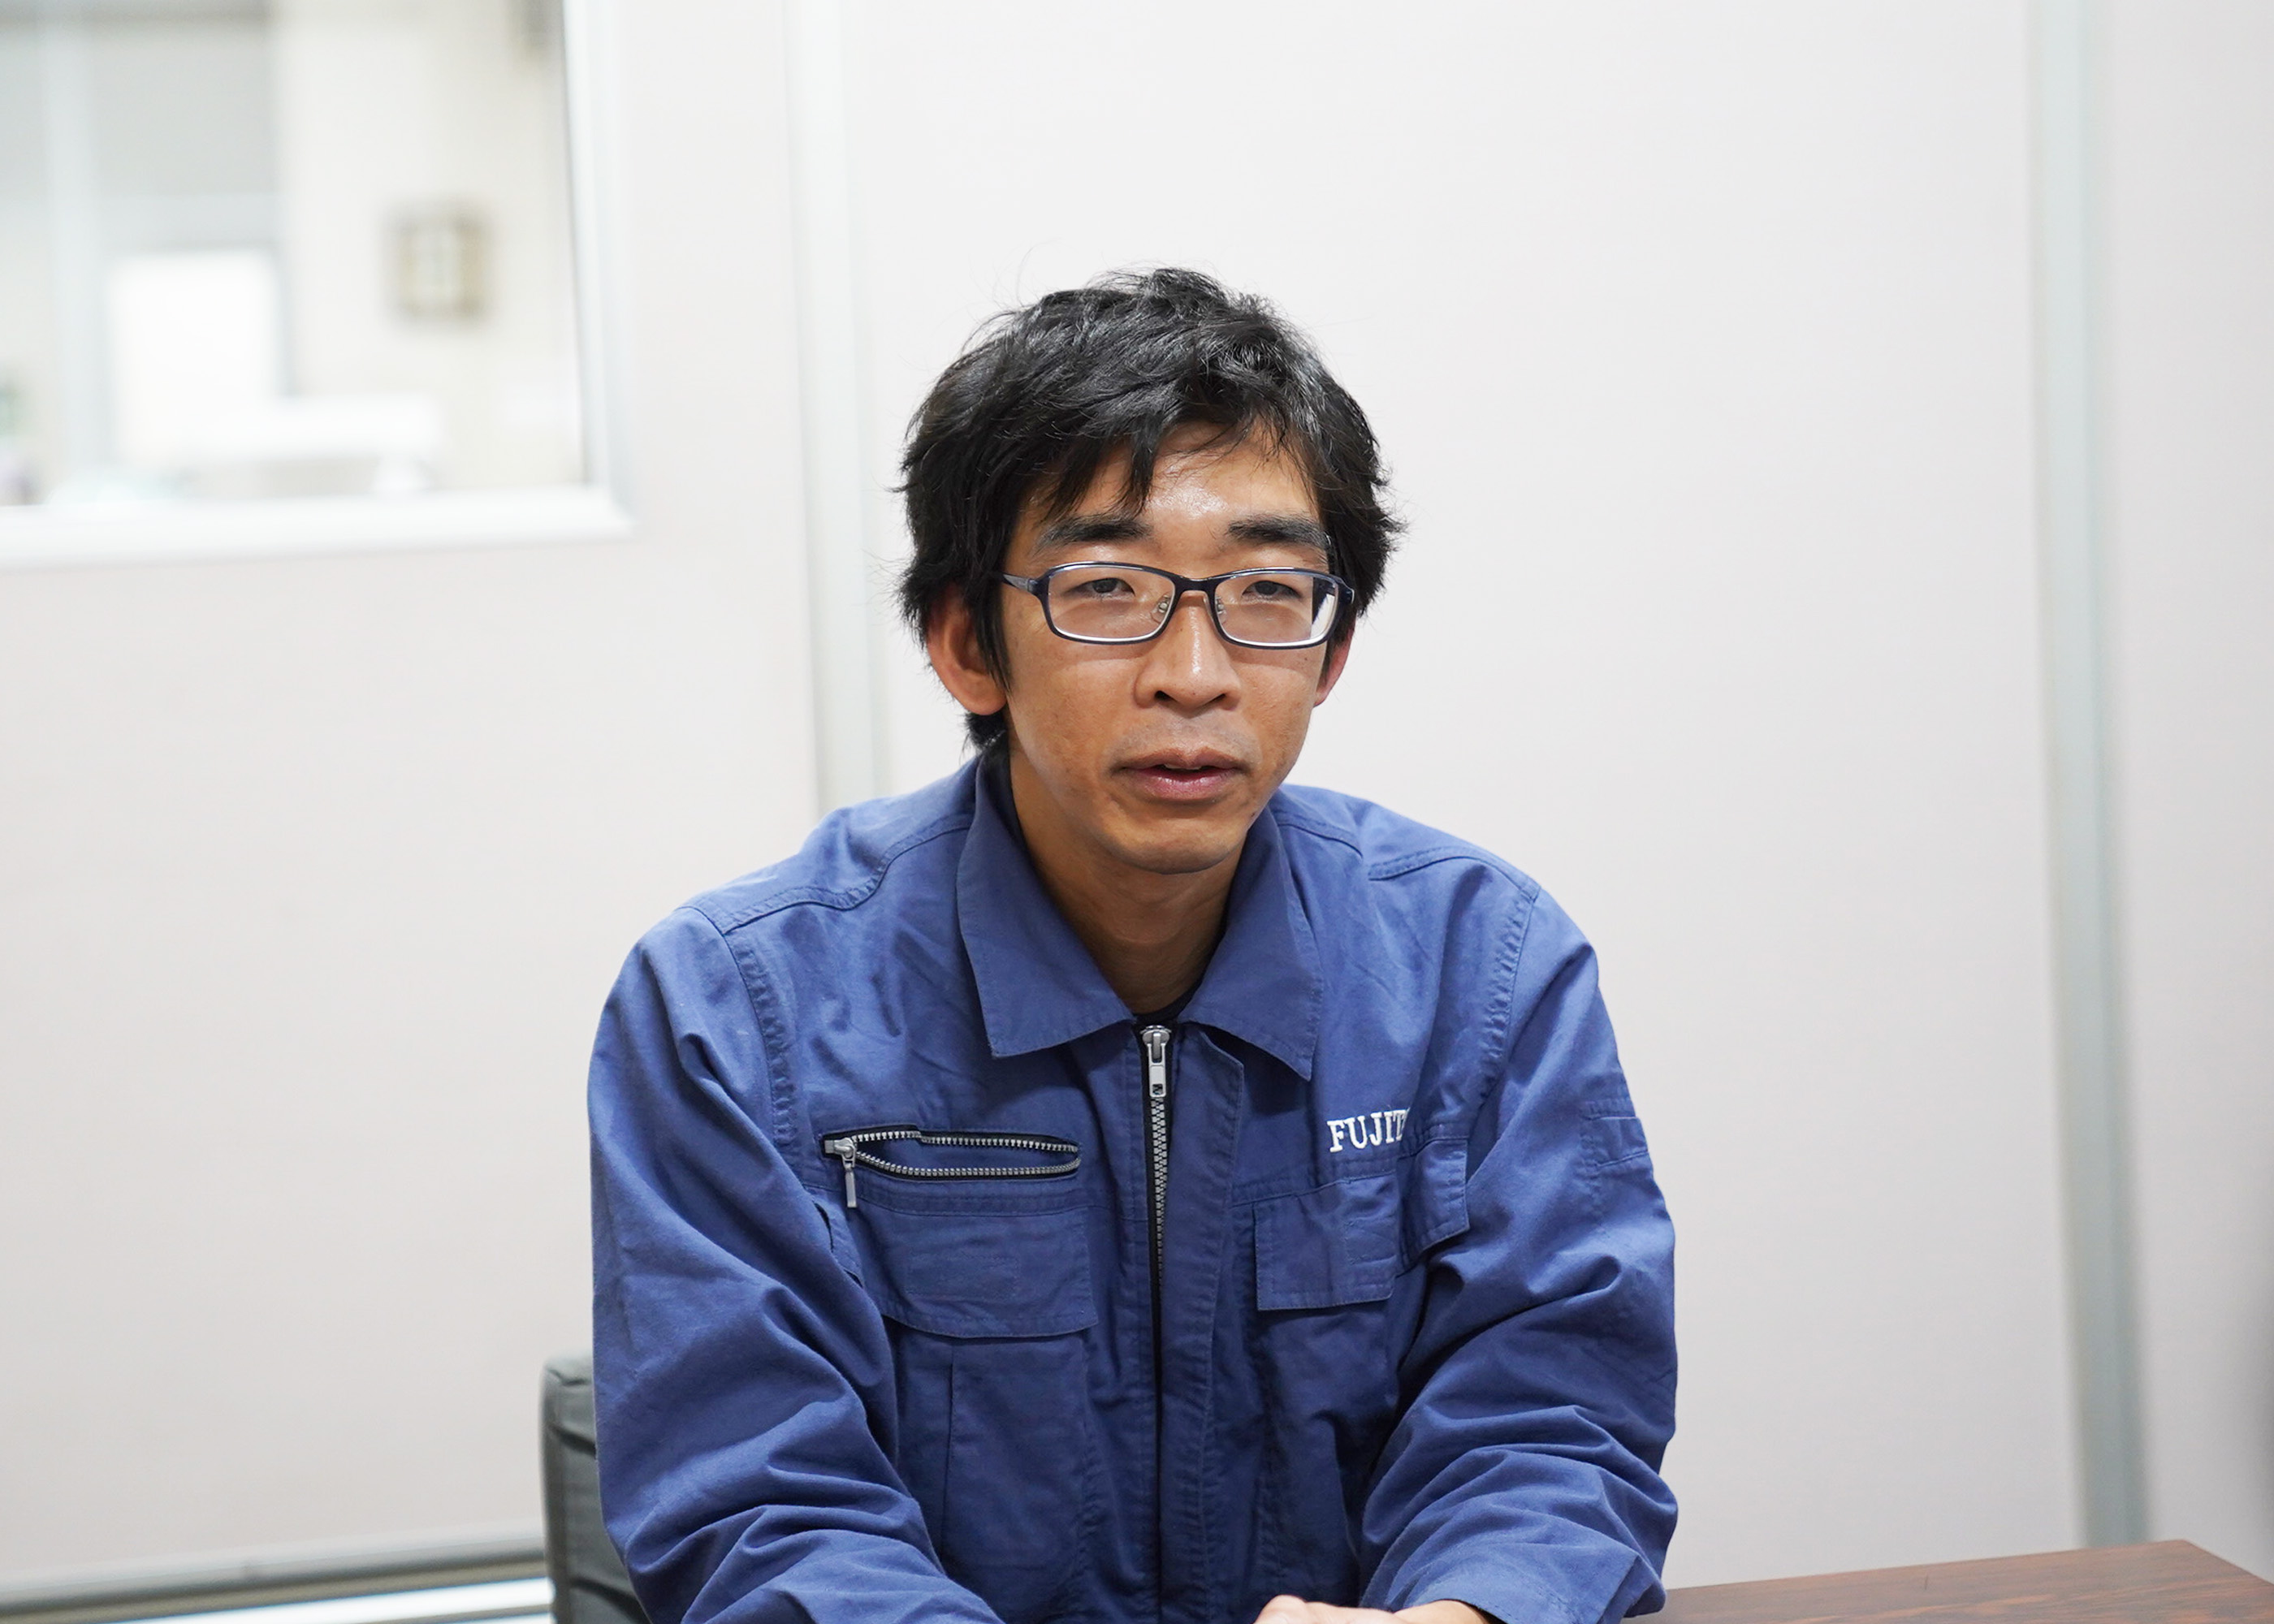 強みを活かすことで、会社に貢献できていると話す須田さん。